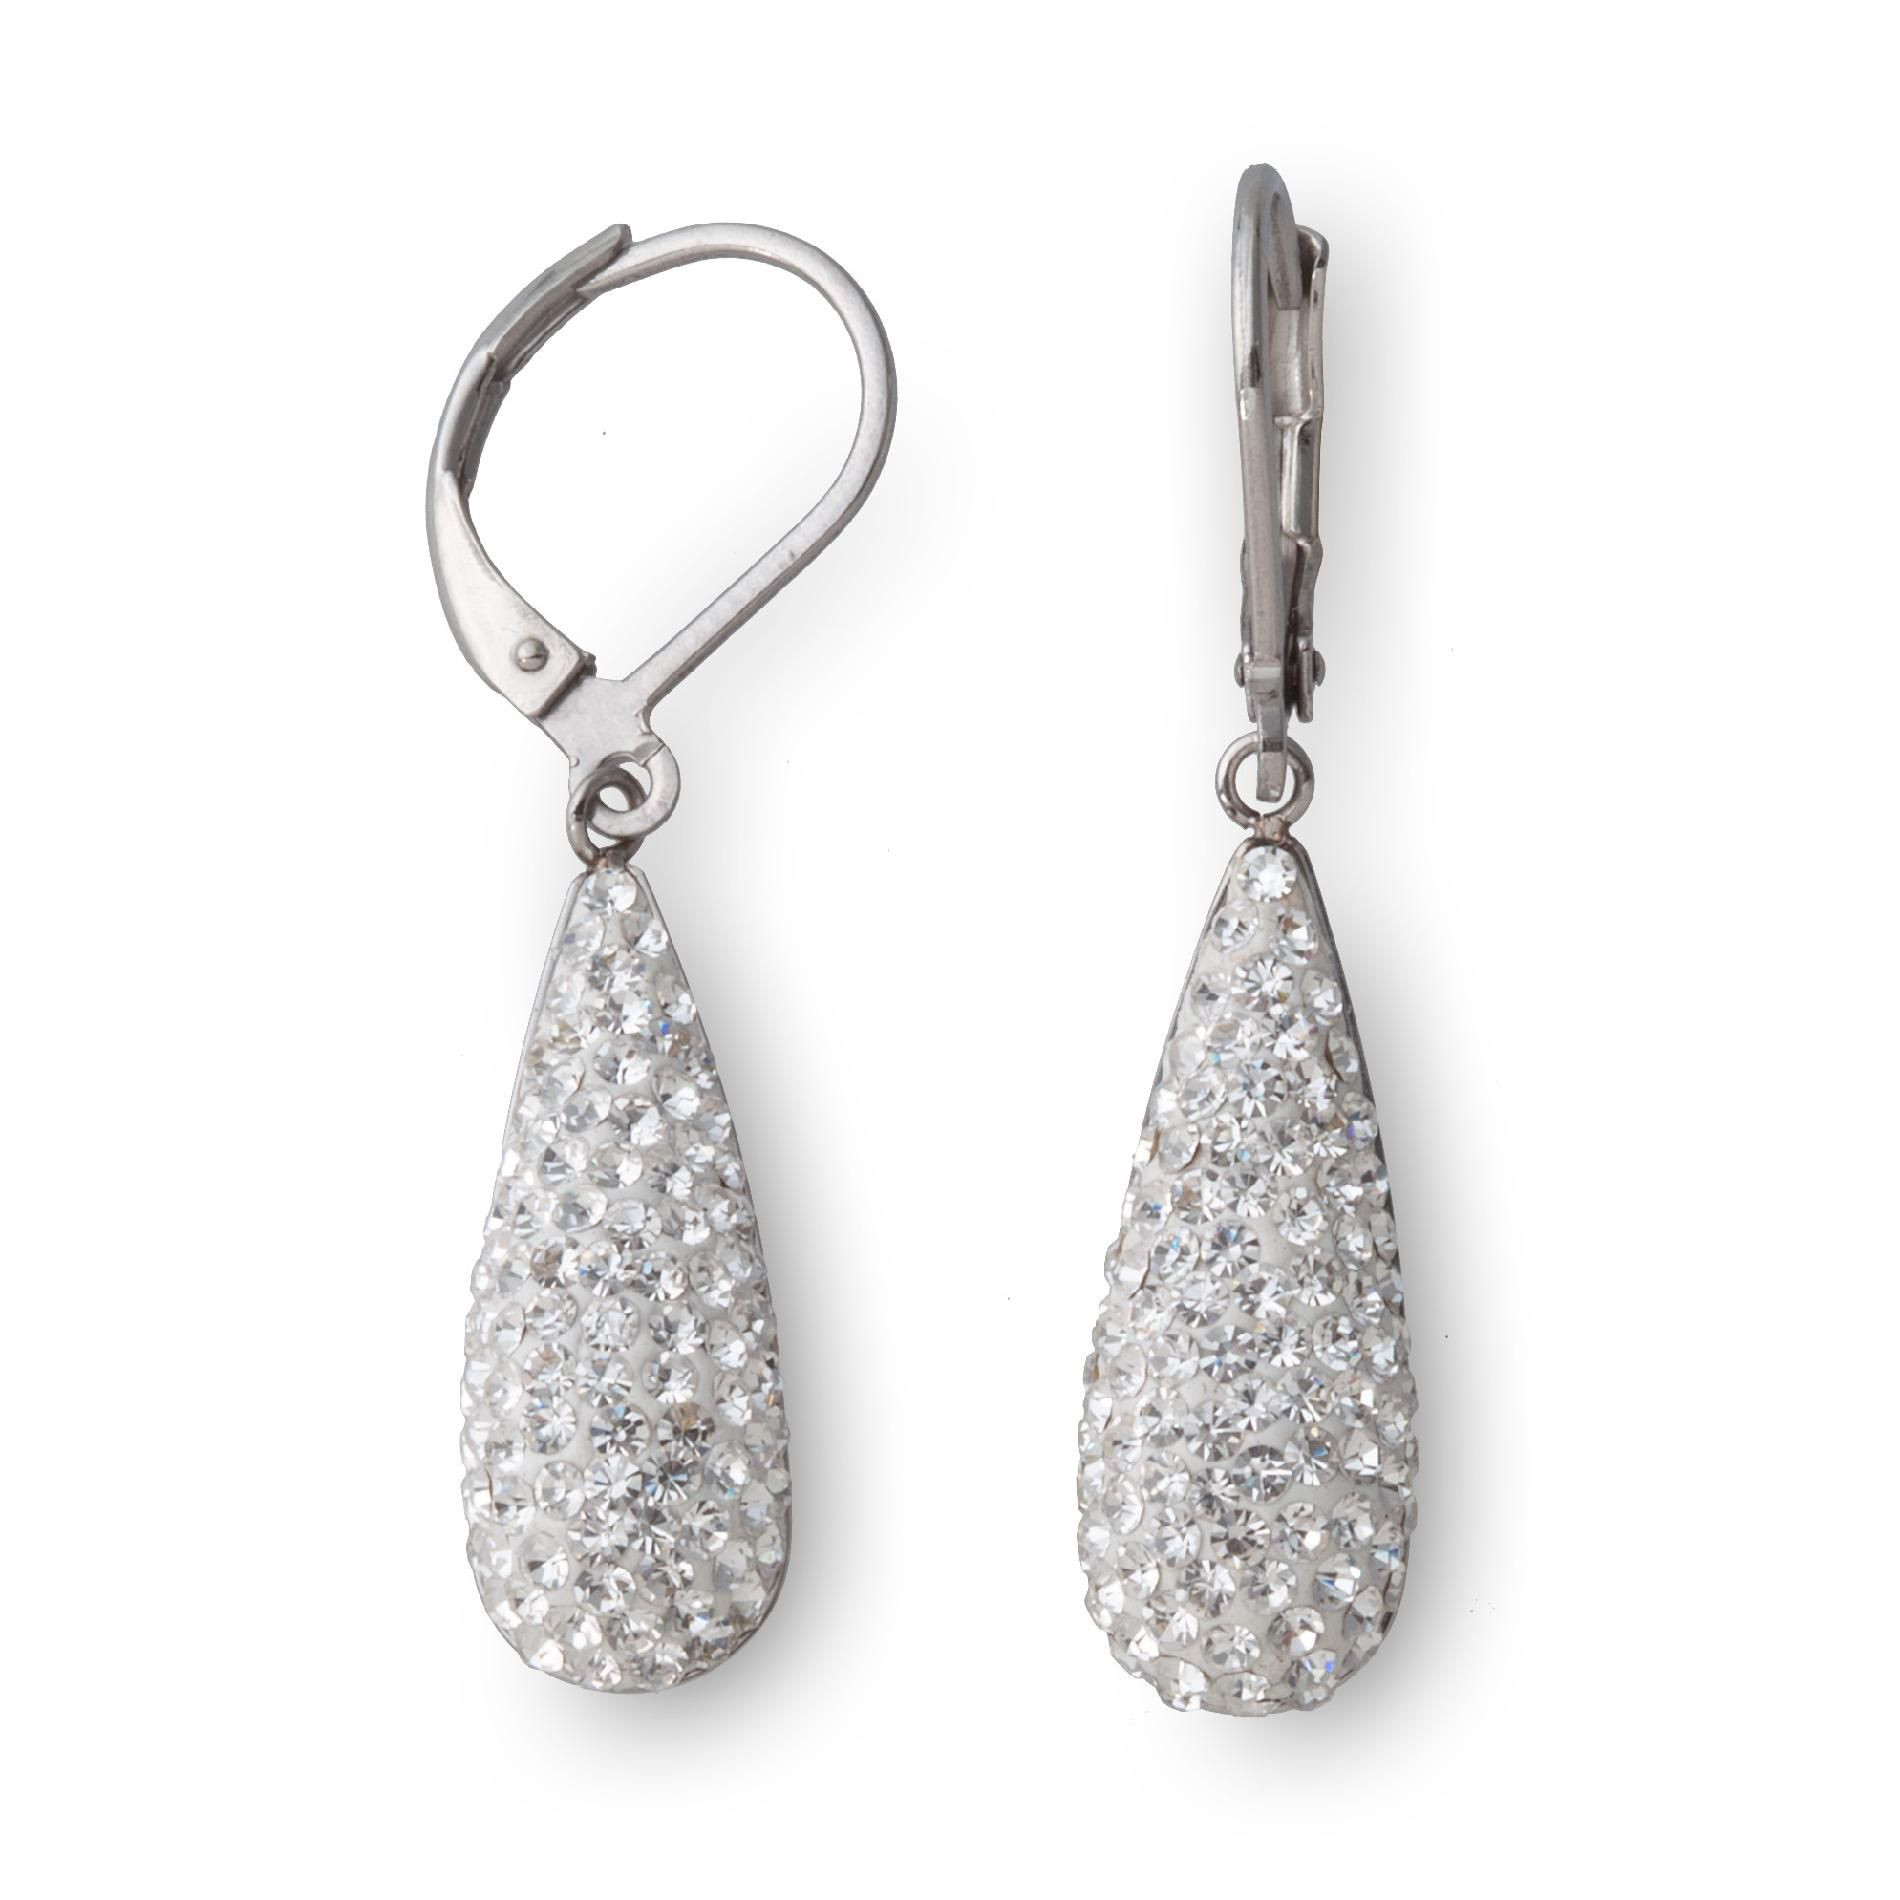 Crystal Teardrop Earrings
 Stainless Steel Clear Crystal Teardrop Earrings Get